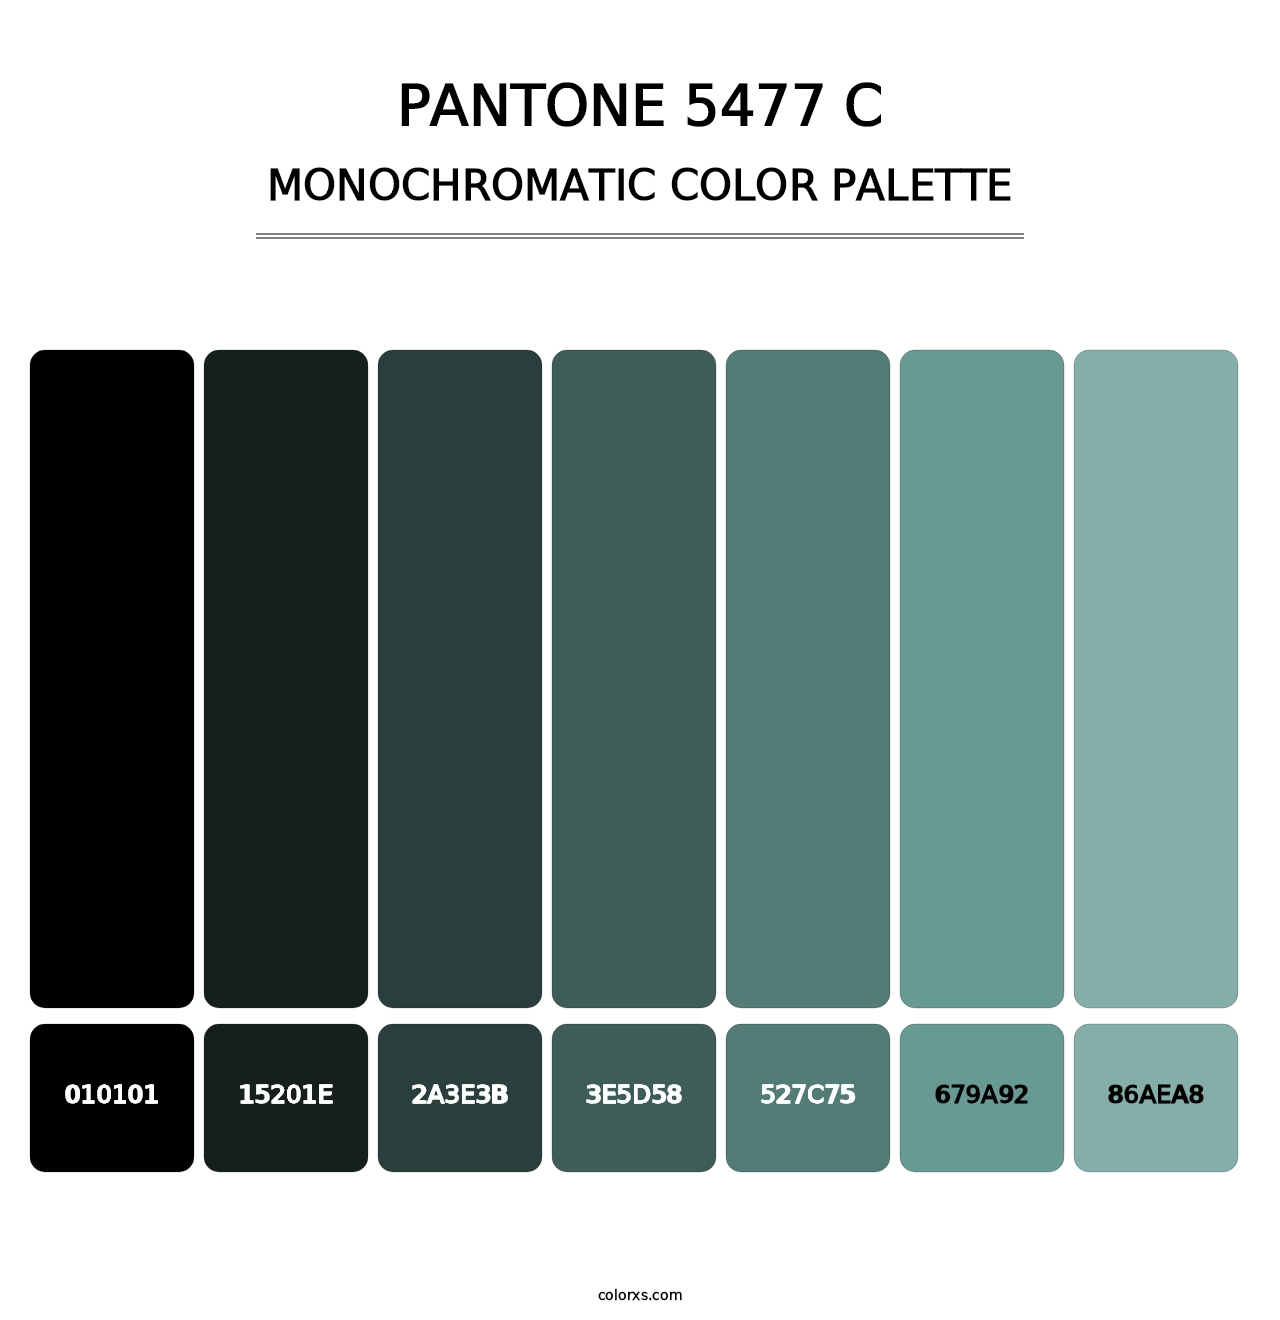 PANTONE 5477 C - Monochromatic Color Palette